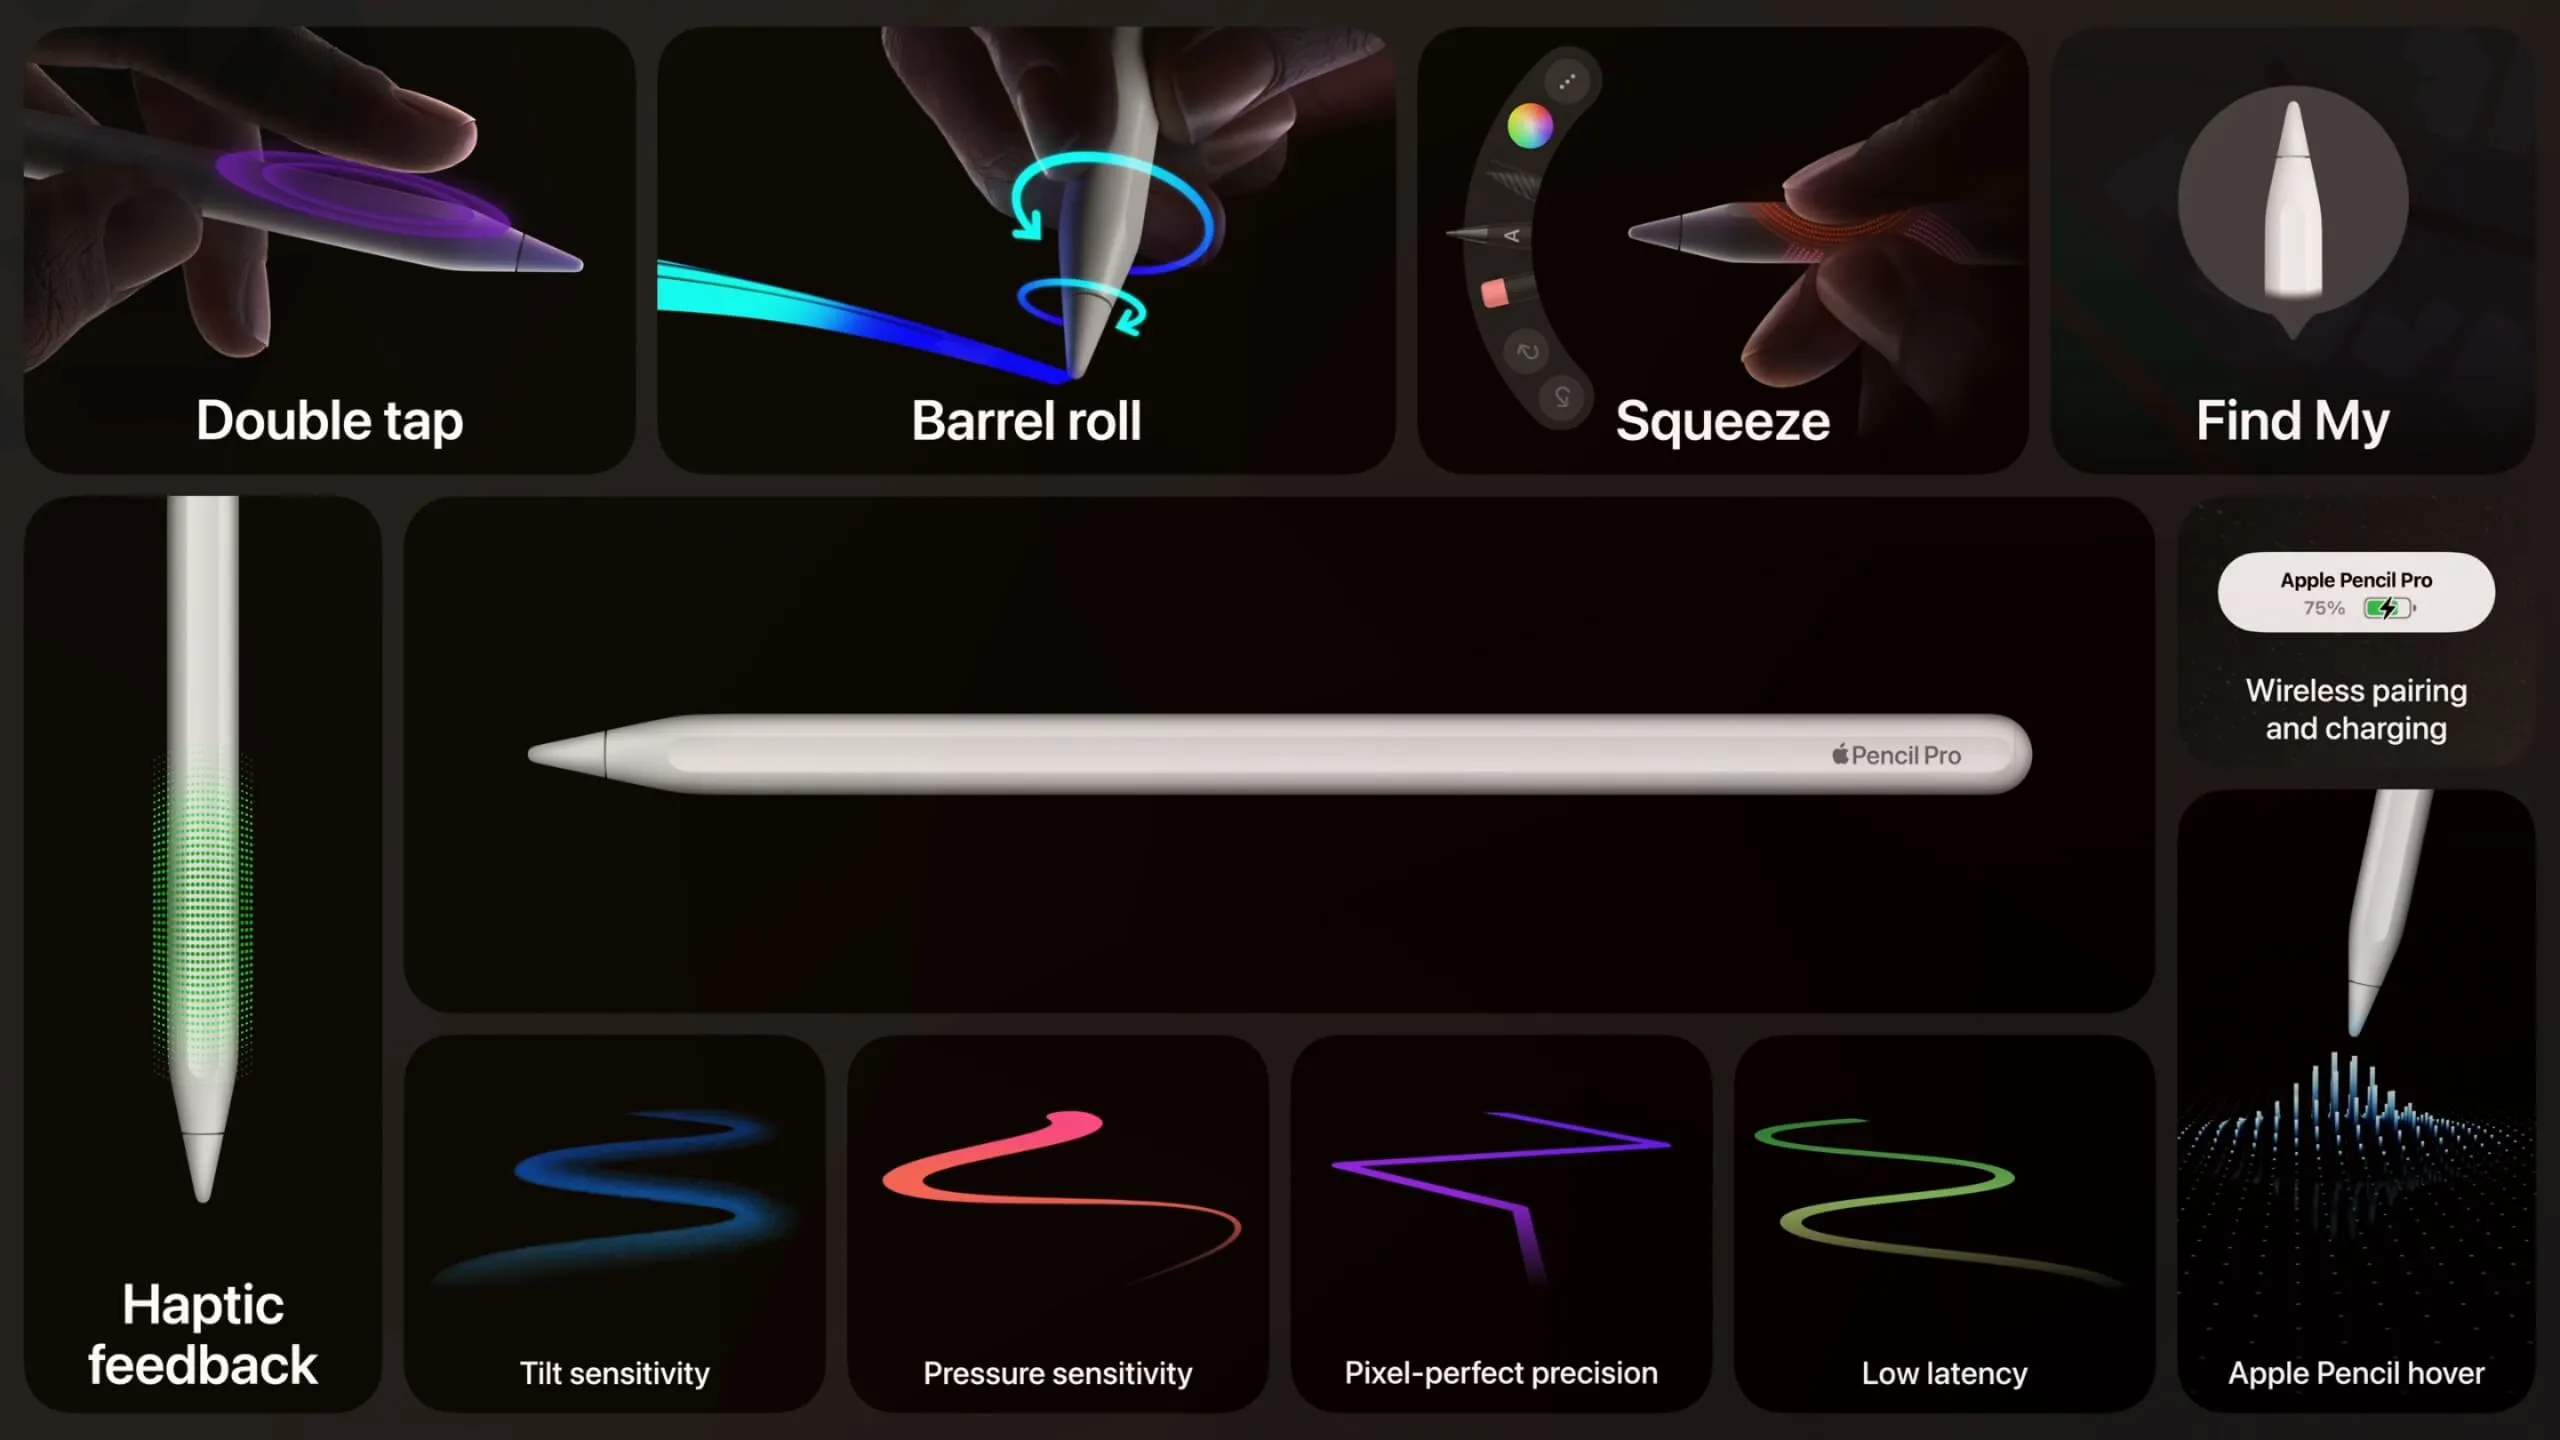 Apple Pen Pro features